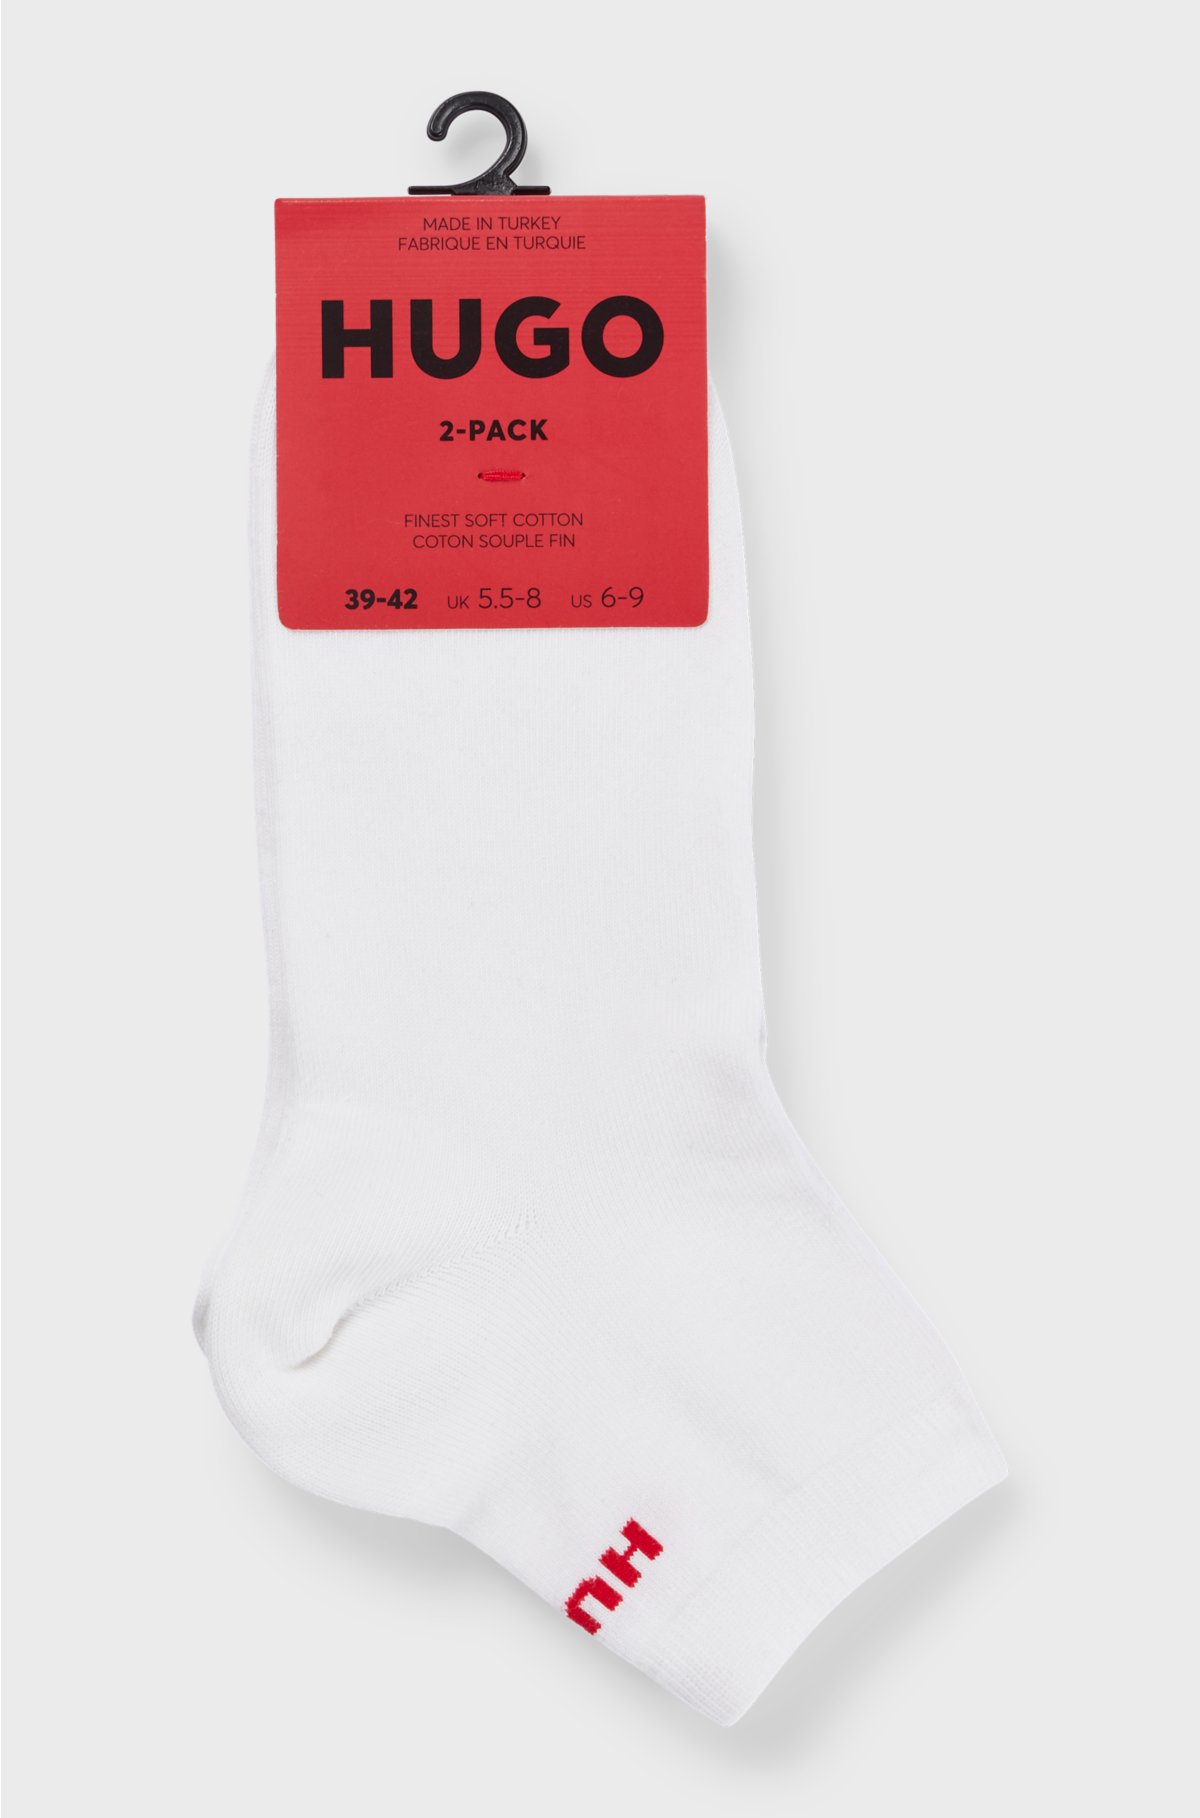 Two-pack of short-length logo socks, White